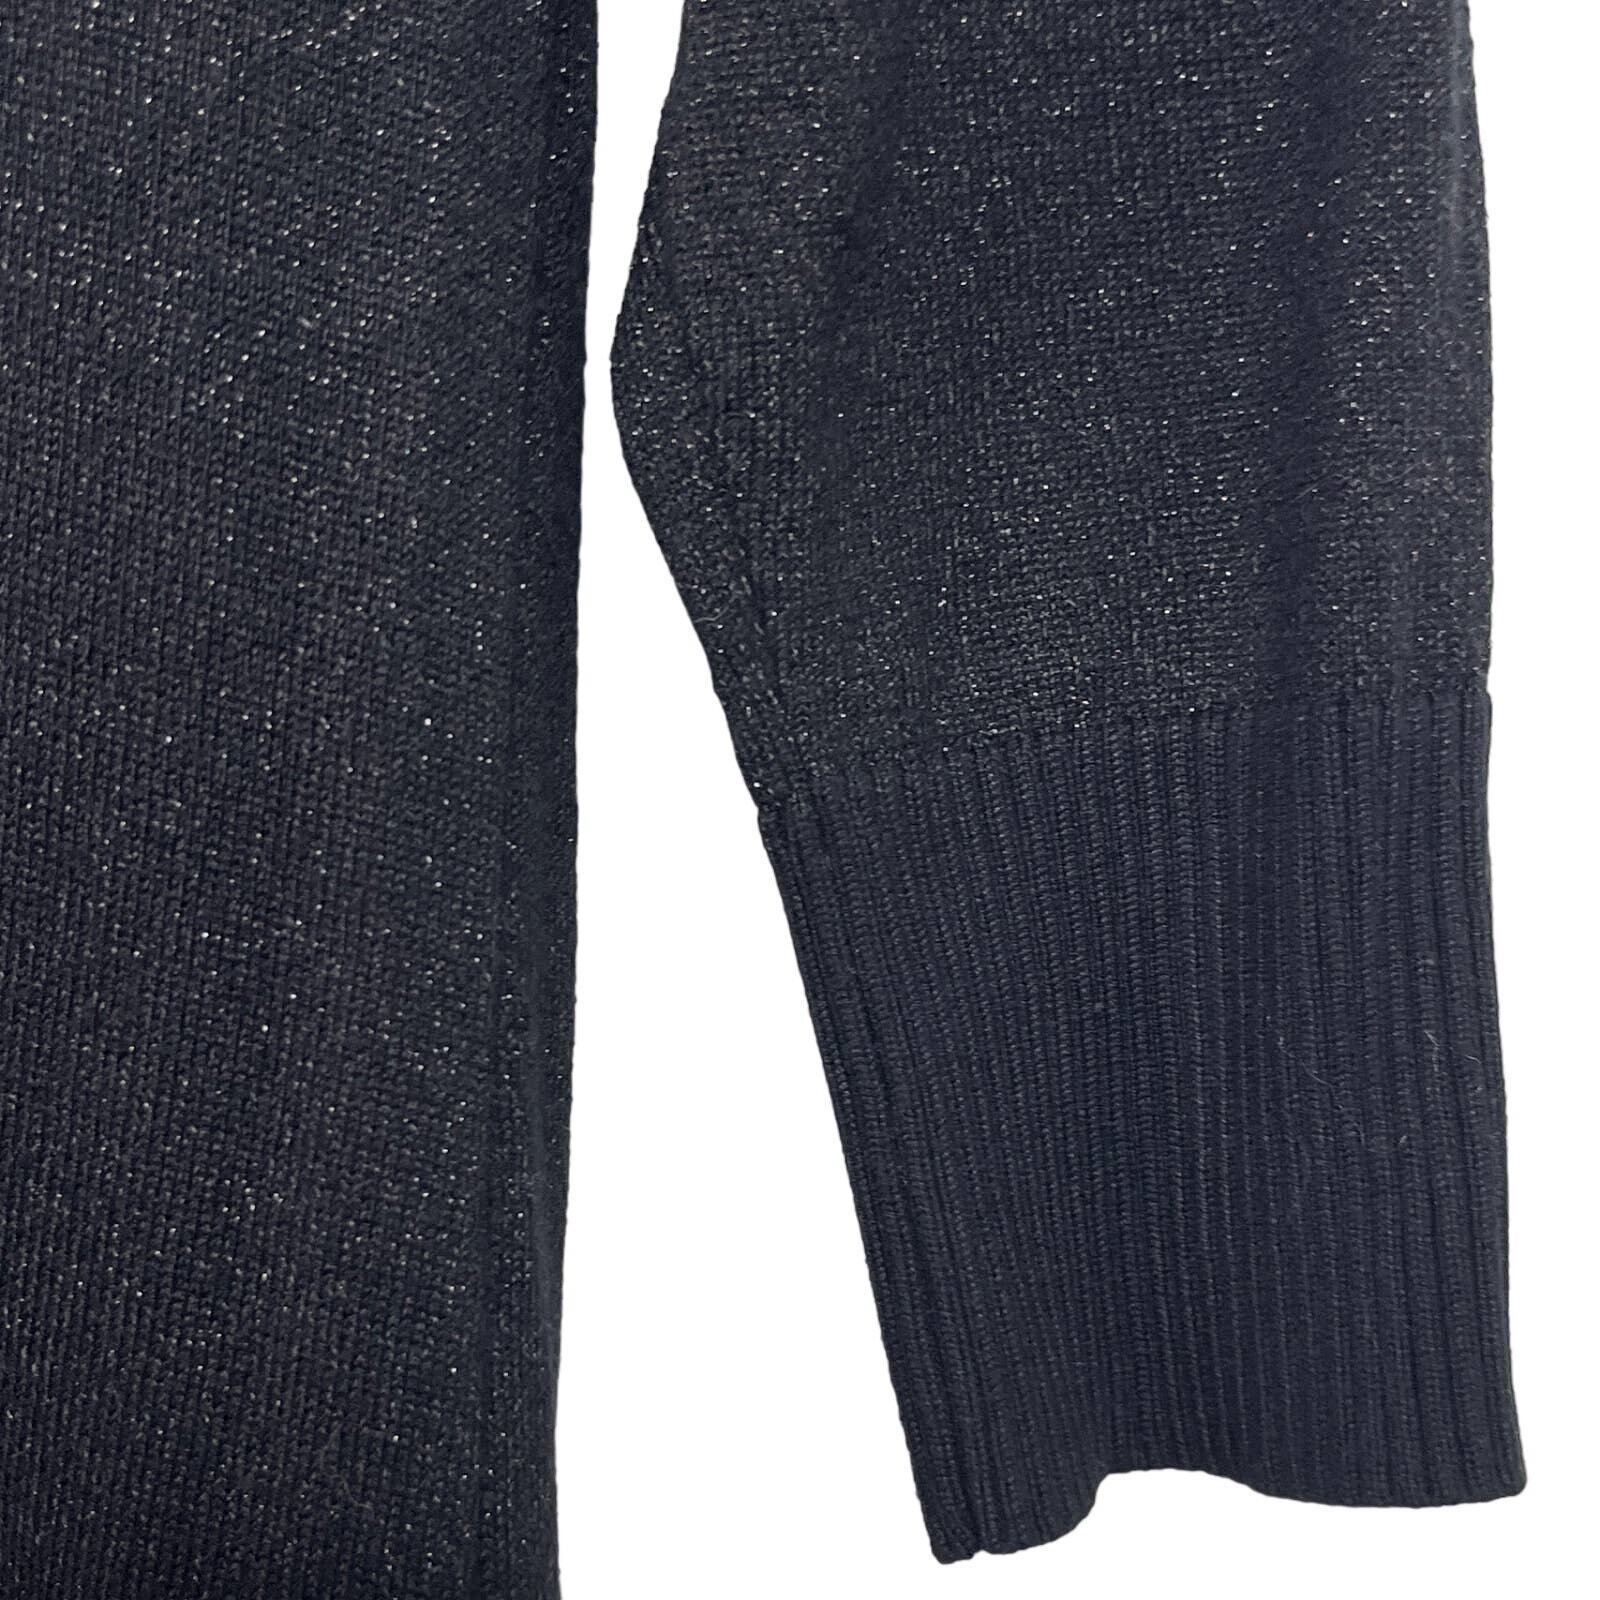 MICHAEL KORS Black Shimmer Sweater Dress Boatneck… - image 10